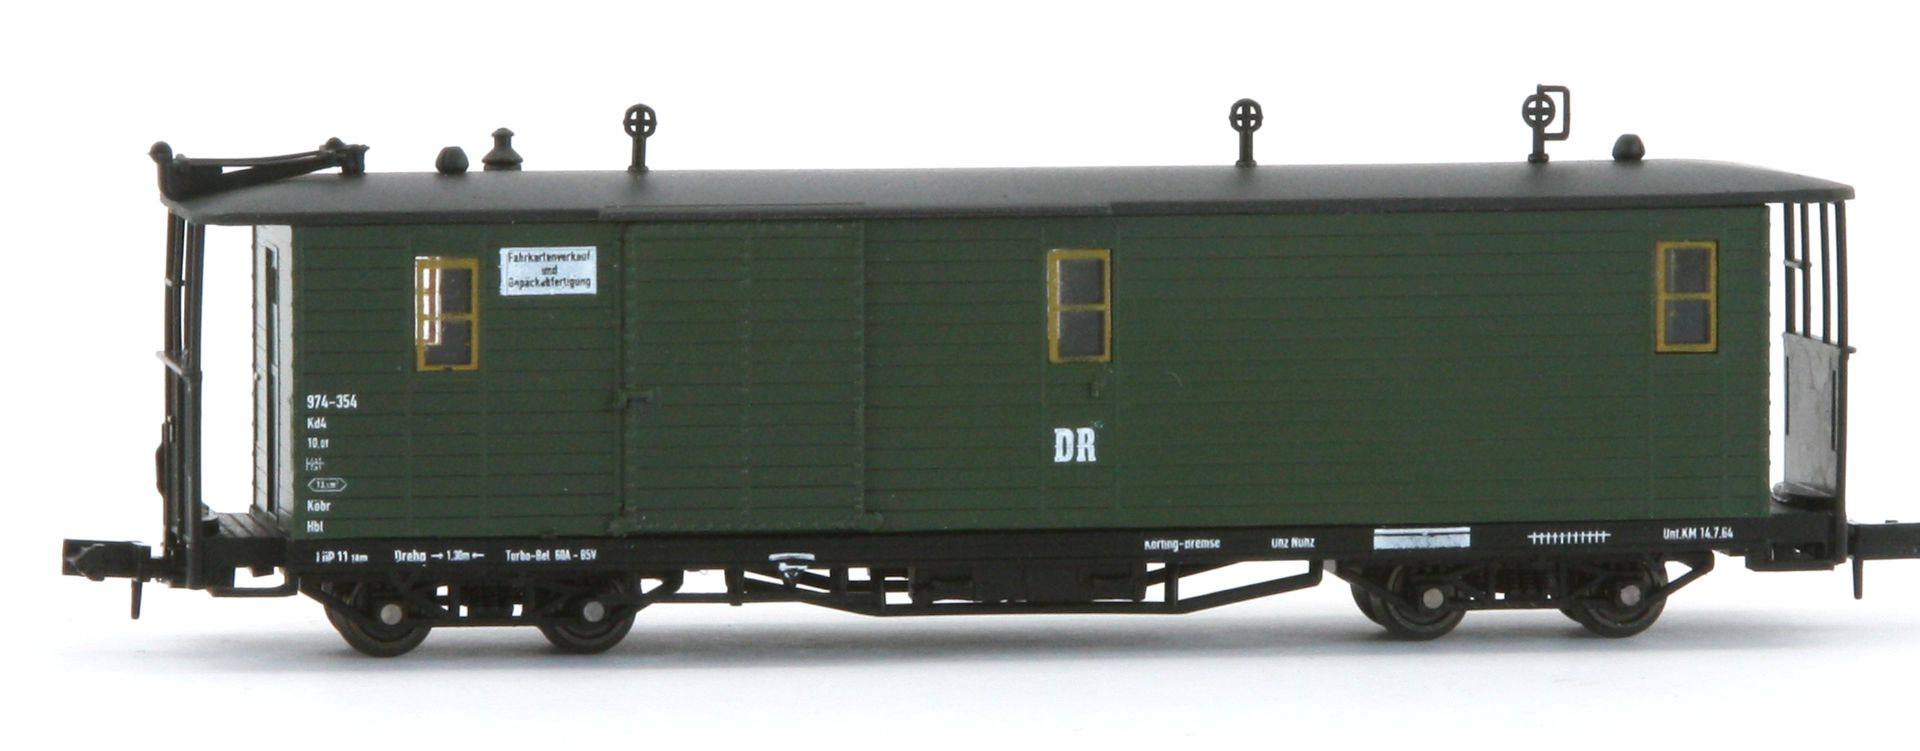 Karsei 29025 - Gepäckwagen 751 mit Längsträgerbeschriftung 970-354, DR, Ep.III-IV